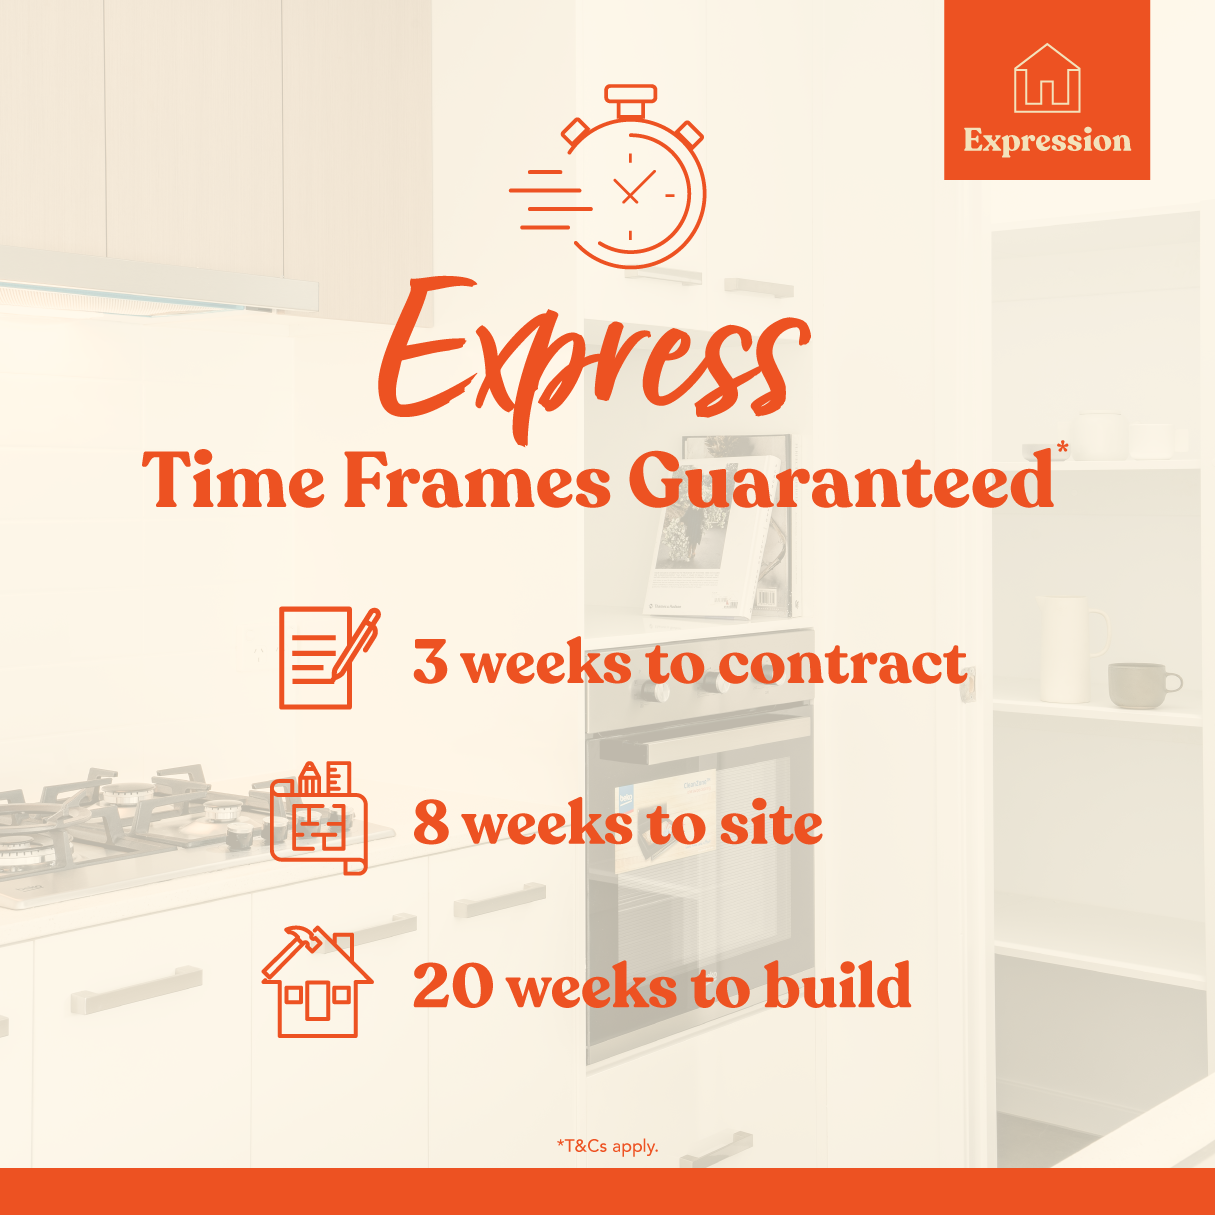 Express Time Frames Guarantee